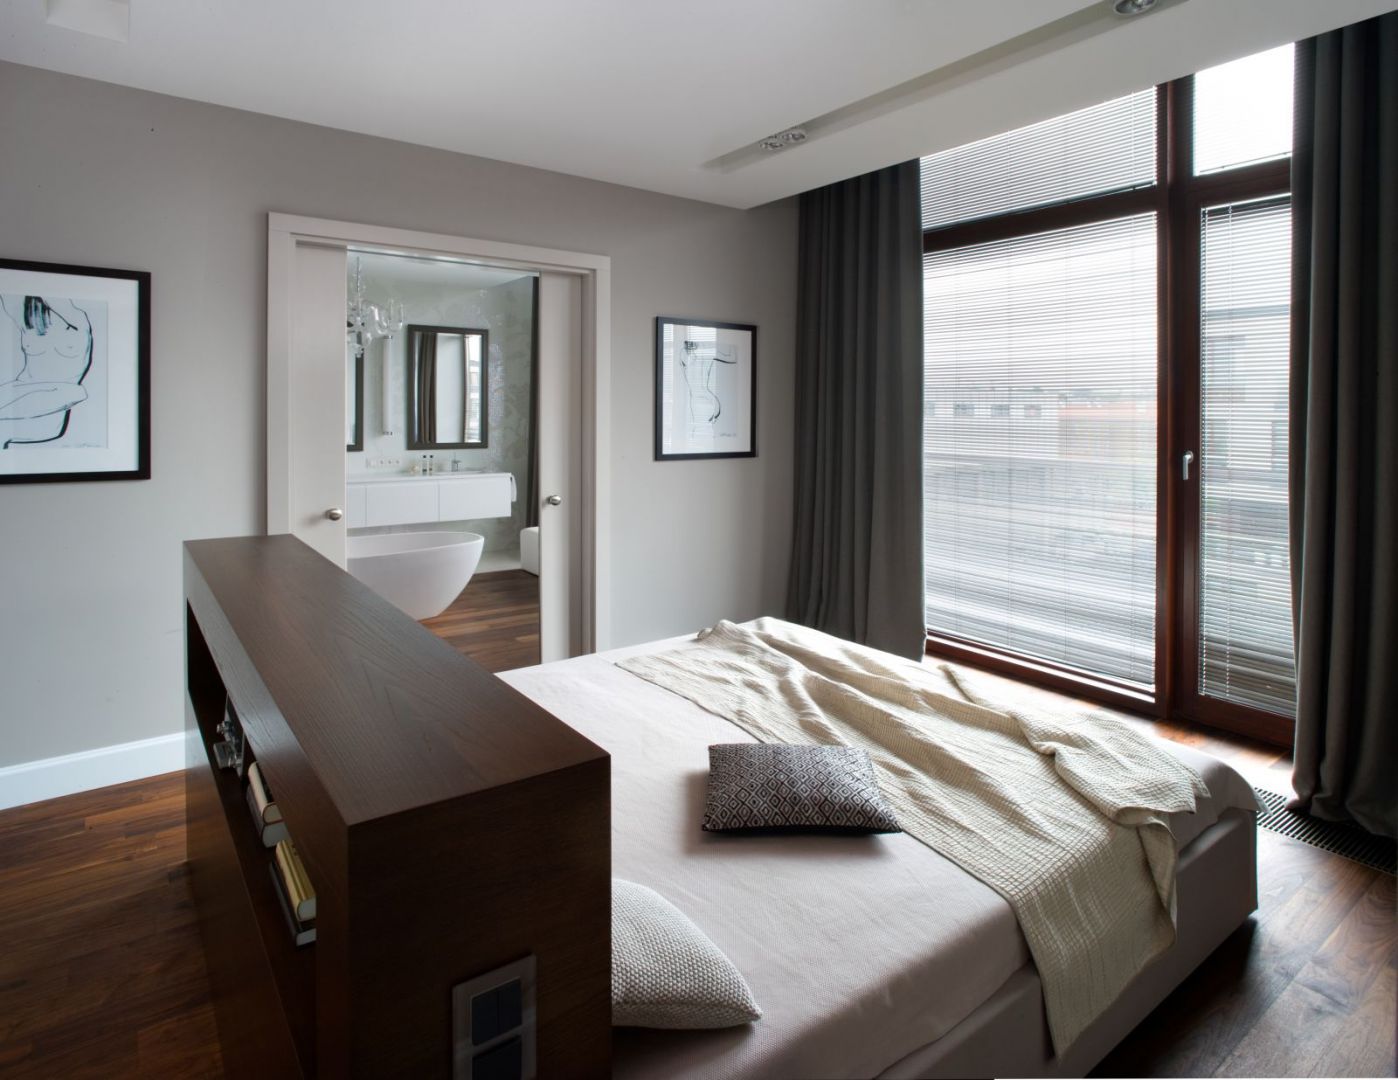 W dużej sypialni można łóżko ustawić na środku, z widokiem na to, co za oknem... Projekt Anna Koszela